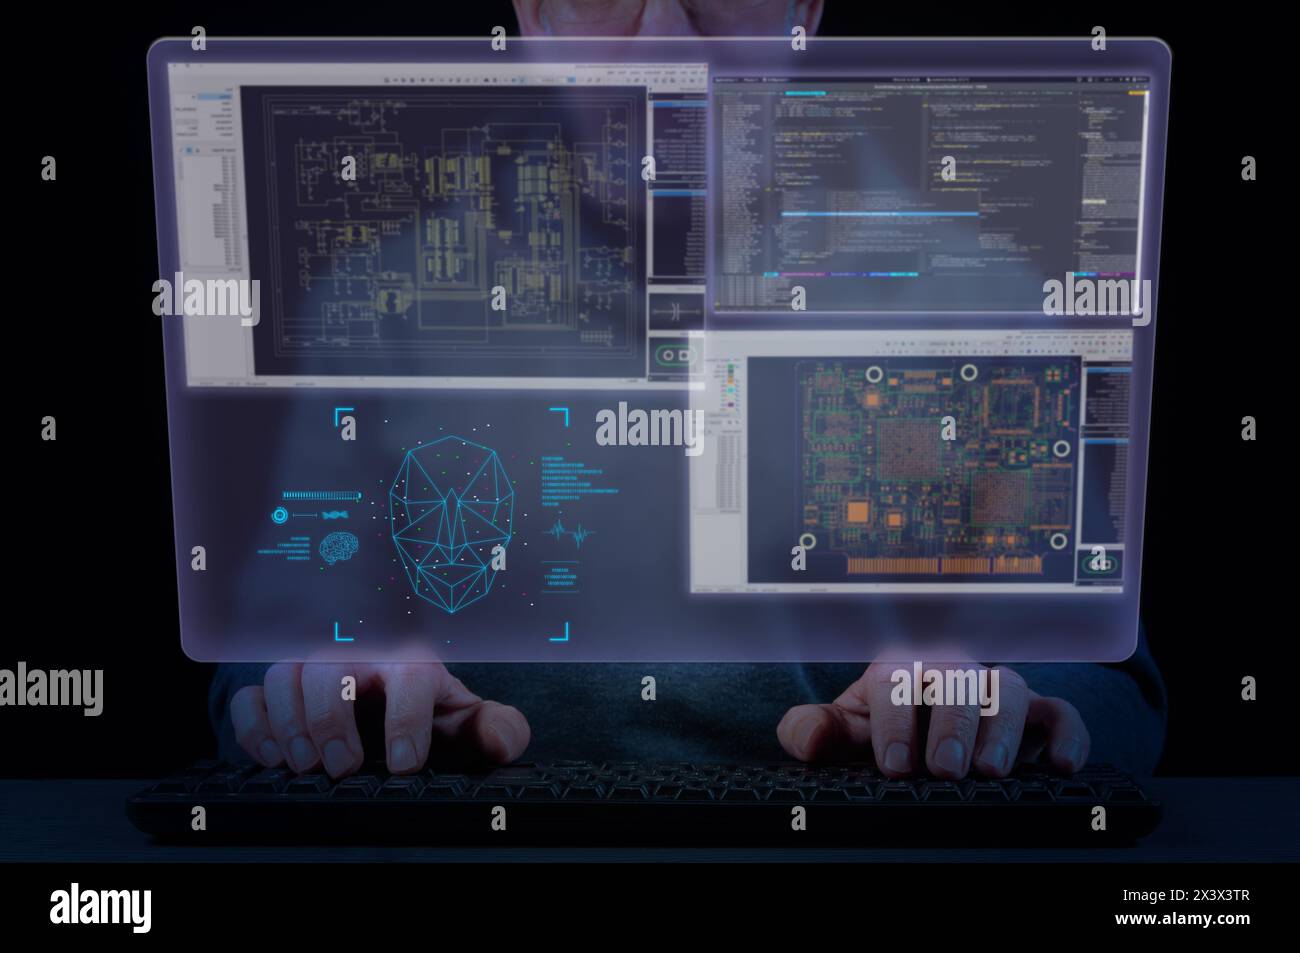 Die Hände des Mannes auf Tastatur und virtuellem Bildschirm mit Computer Aided Design-Software-Fenstern. Konzept des Ablaufdiagramms des Entwicklungsprozesses in der Elektronik Stockfoto